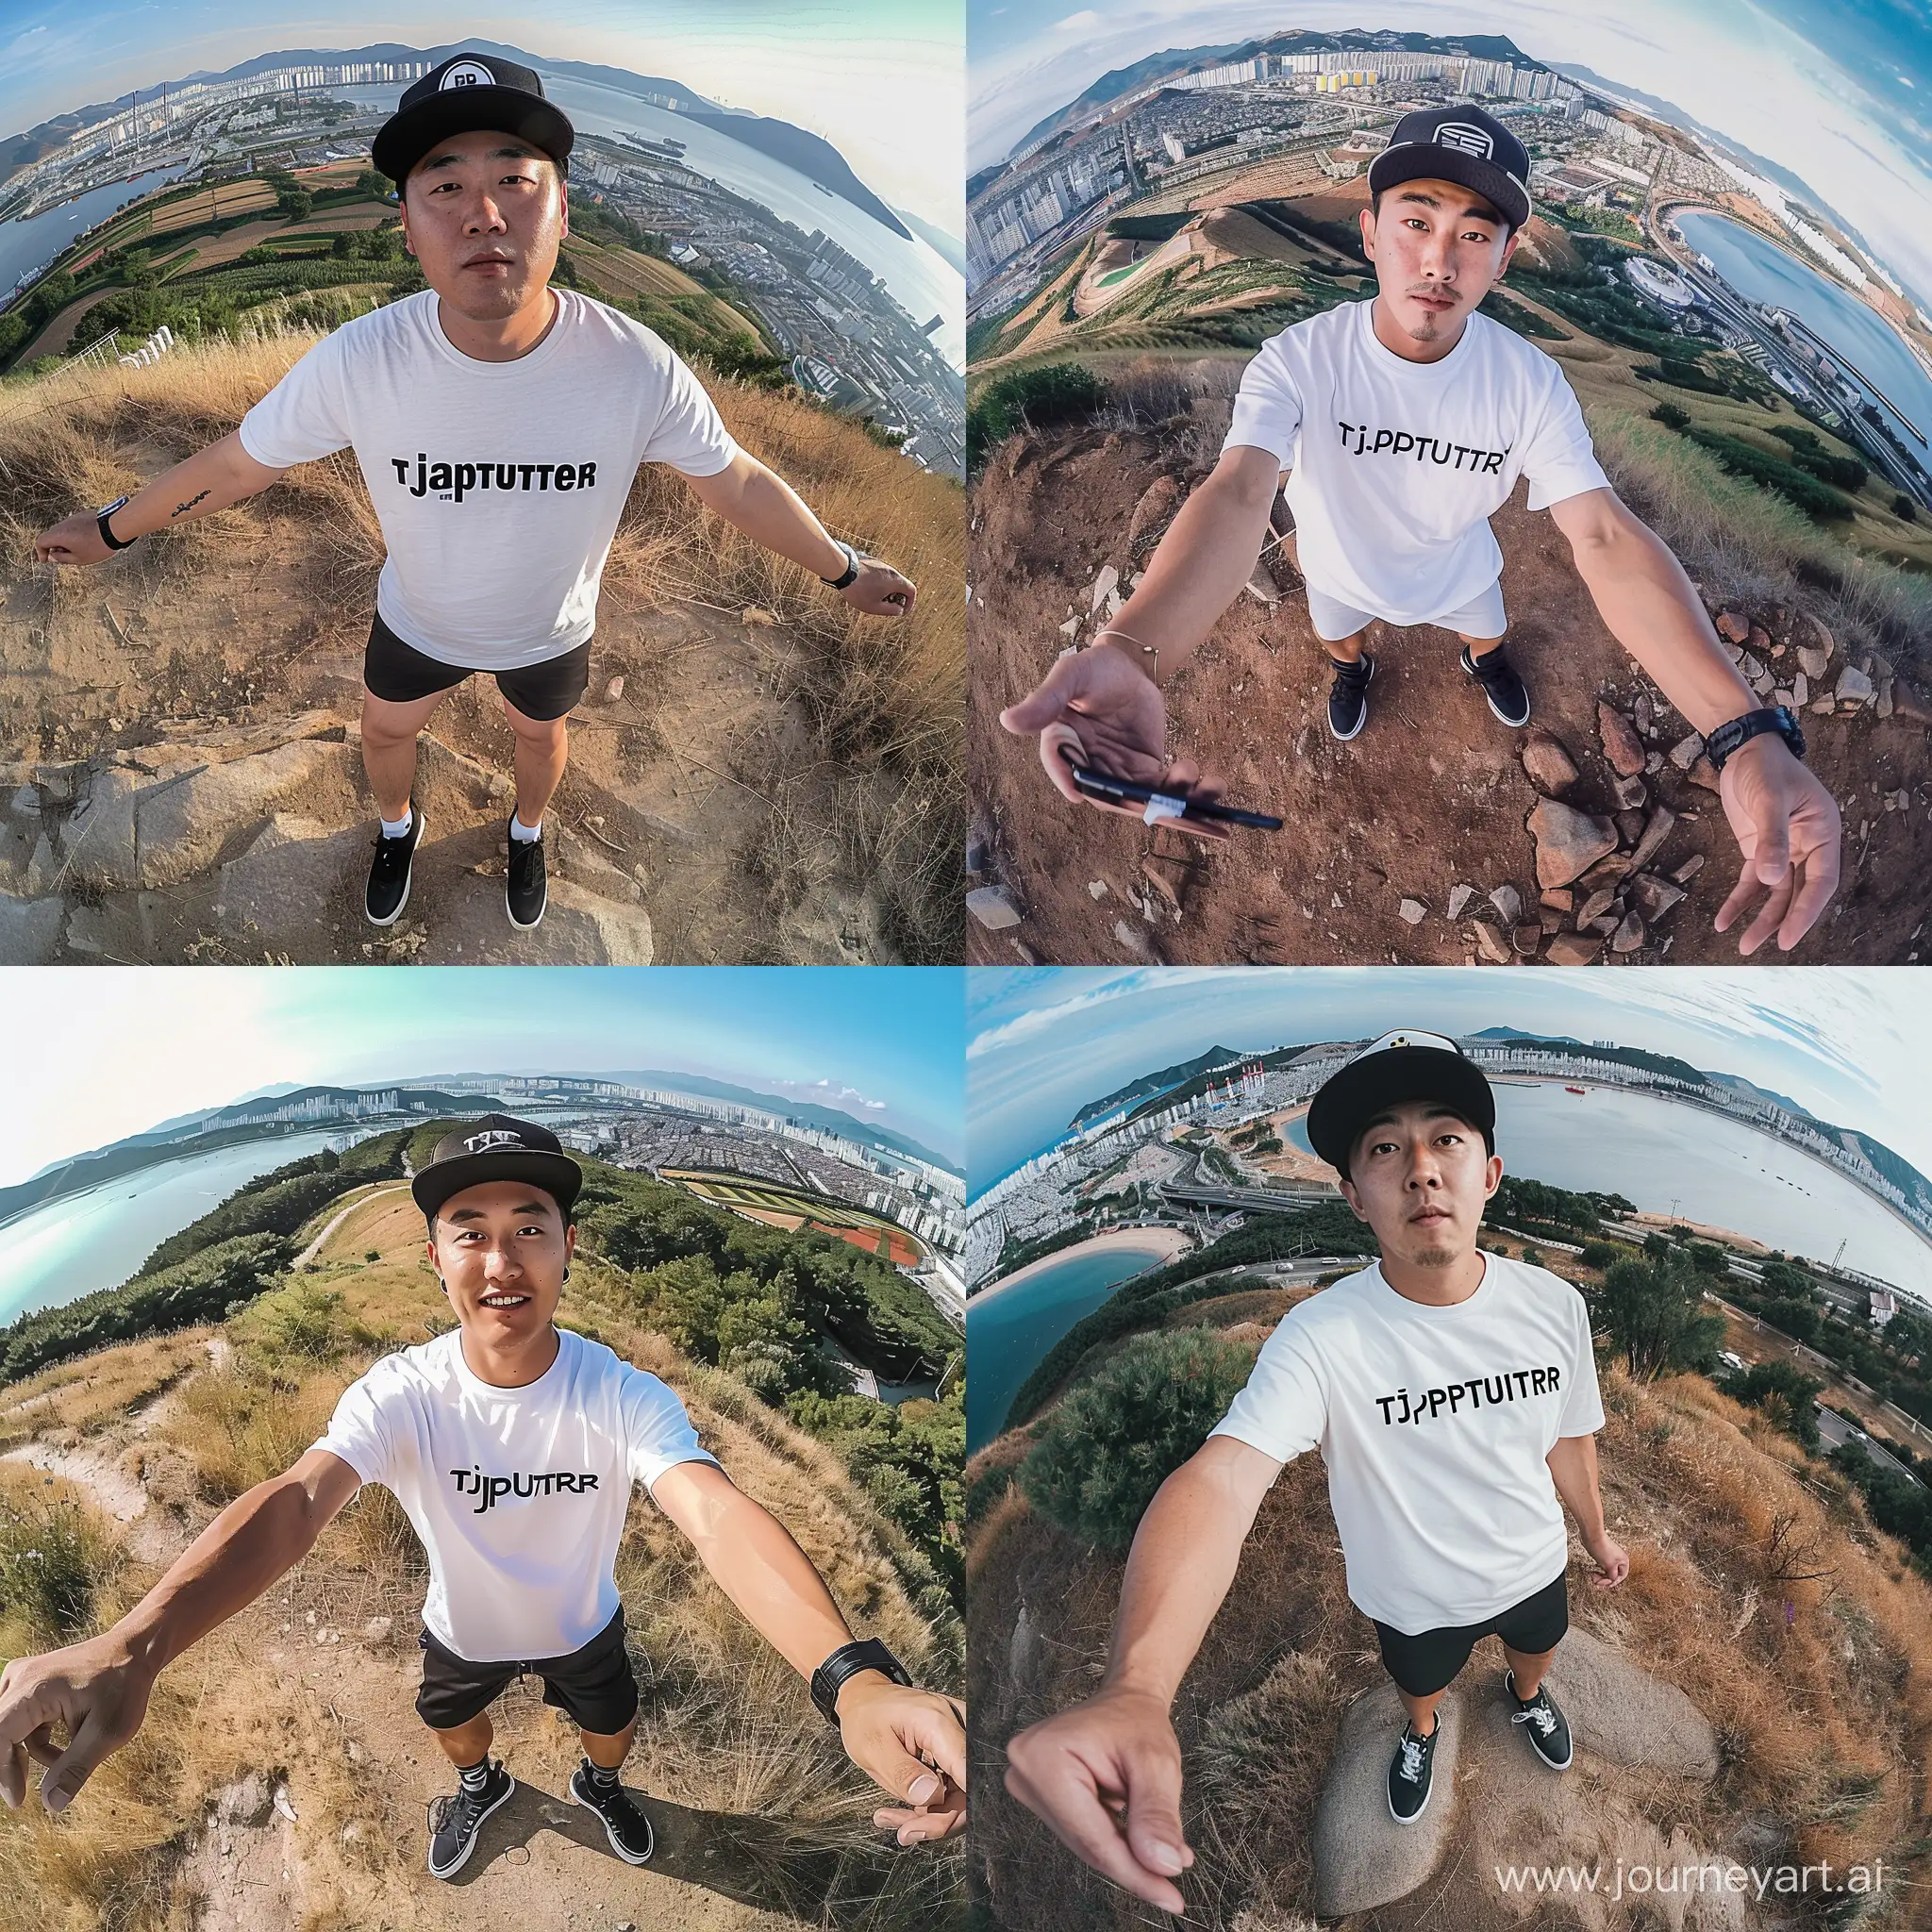 Korean-Man-in-Tjaptjuter-Tee-Captures-Stunning-Selfie-atop-Hill